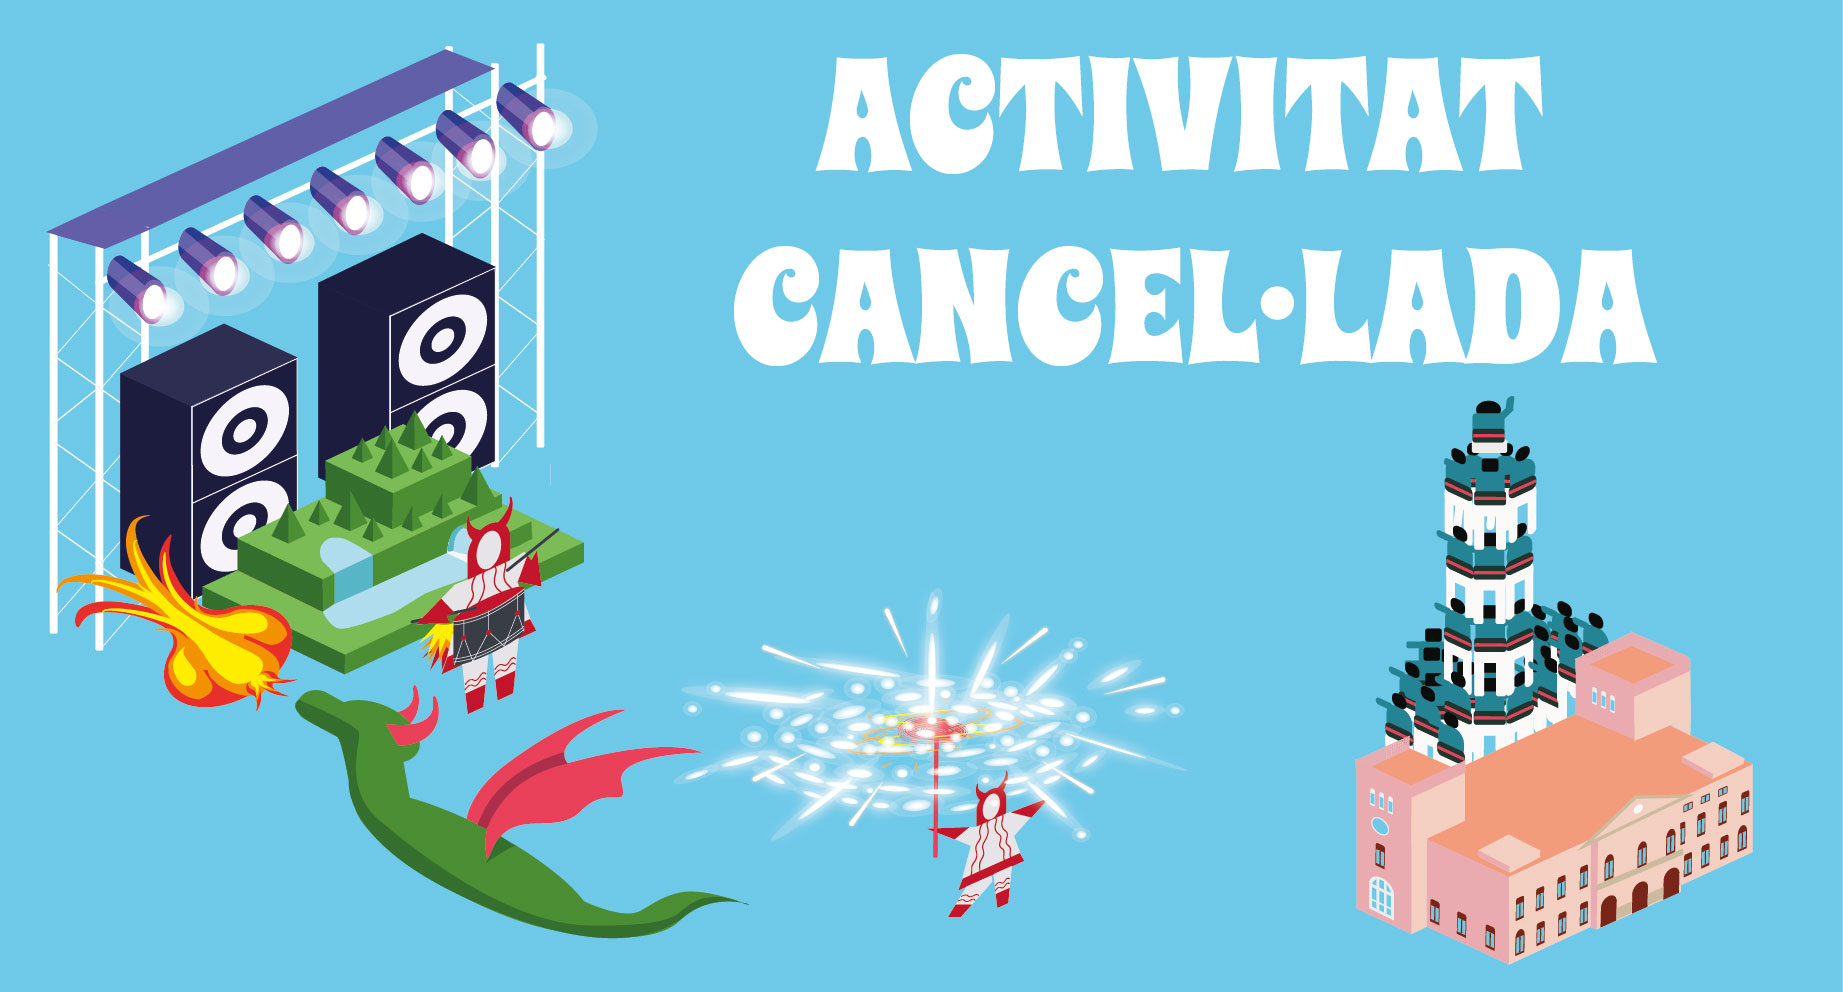 Activitats cancel·lades o ajornades